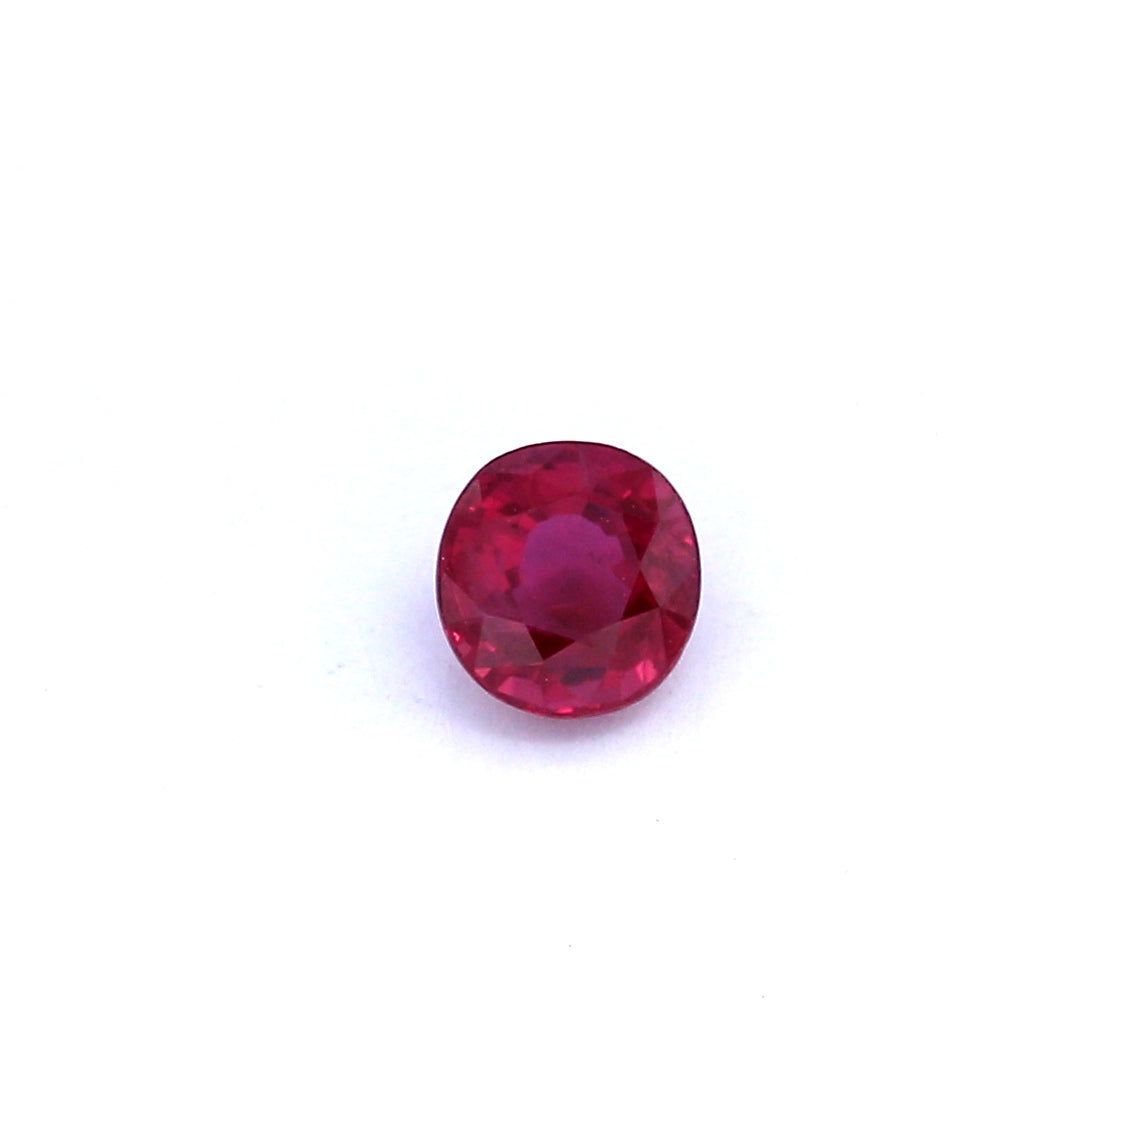 0.67ct Purplish Red, Round Ruby, Heated, Thailand - 4.64 x 4.86 x 3.19mm